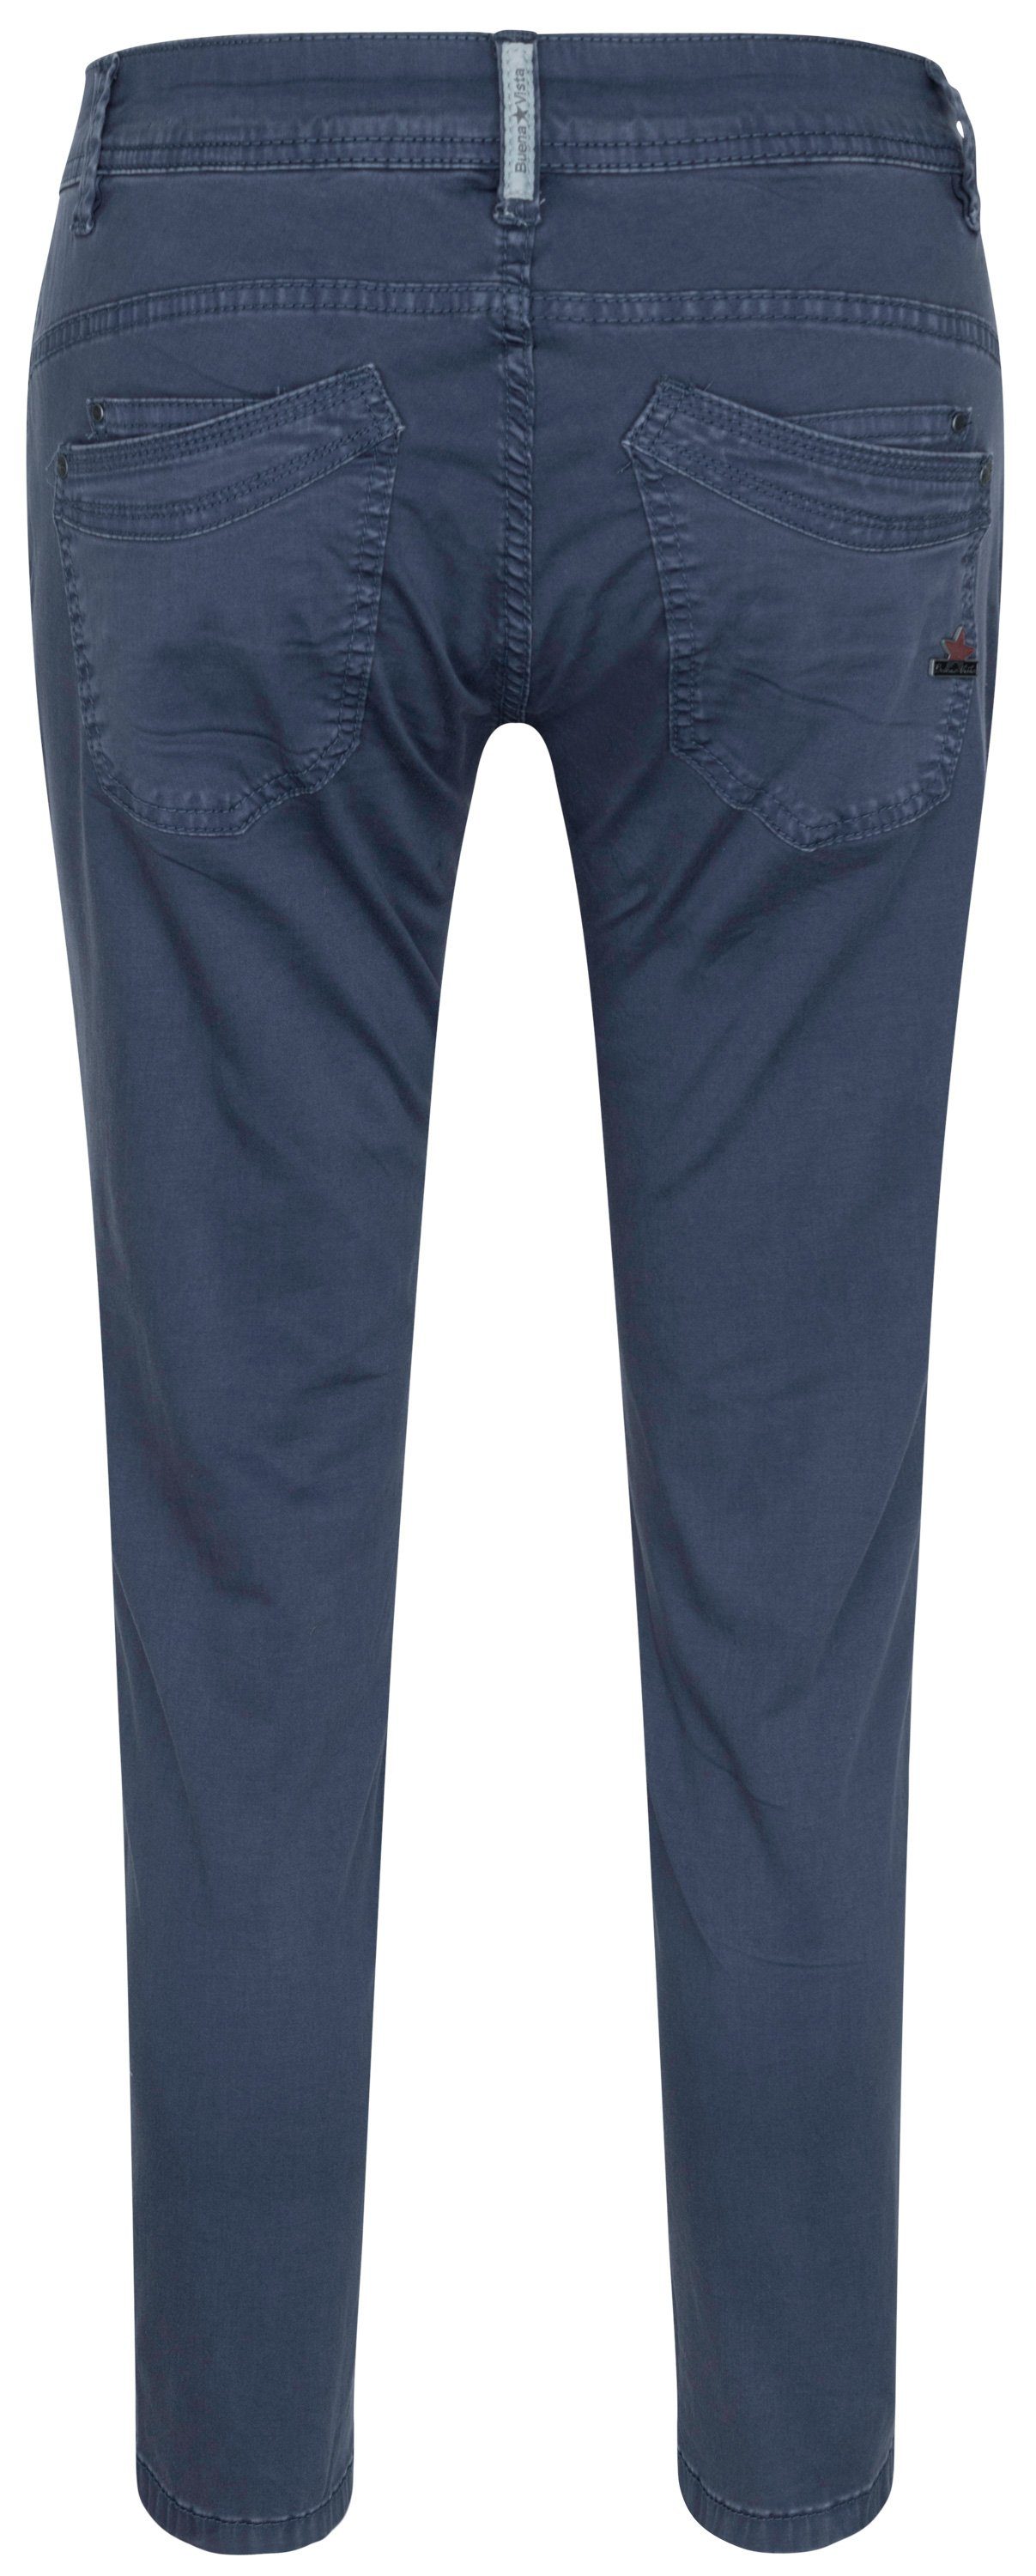 Buena Vista Stretch-Jeans BUENA Twill VISTA 7/8 ocean blue 4003.5026 Stretch MALIBU - 2304 B5122